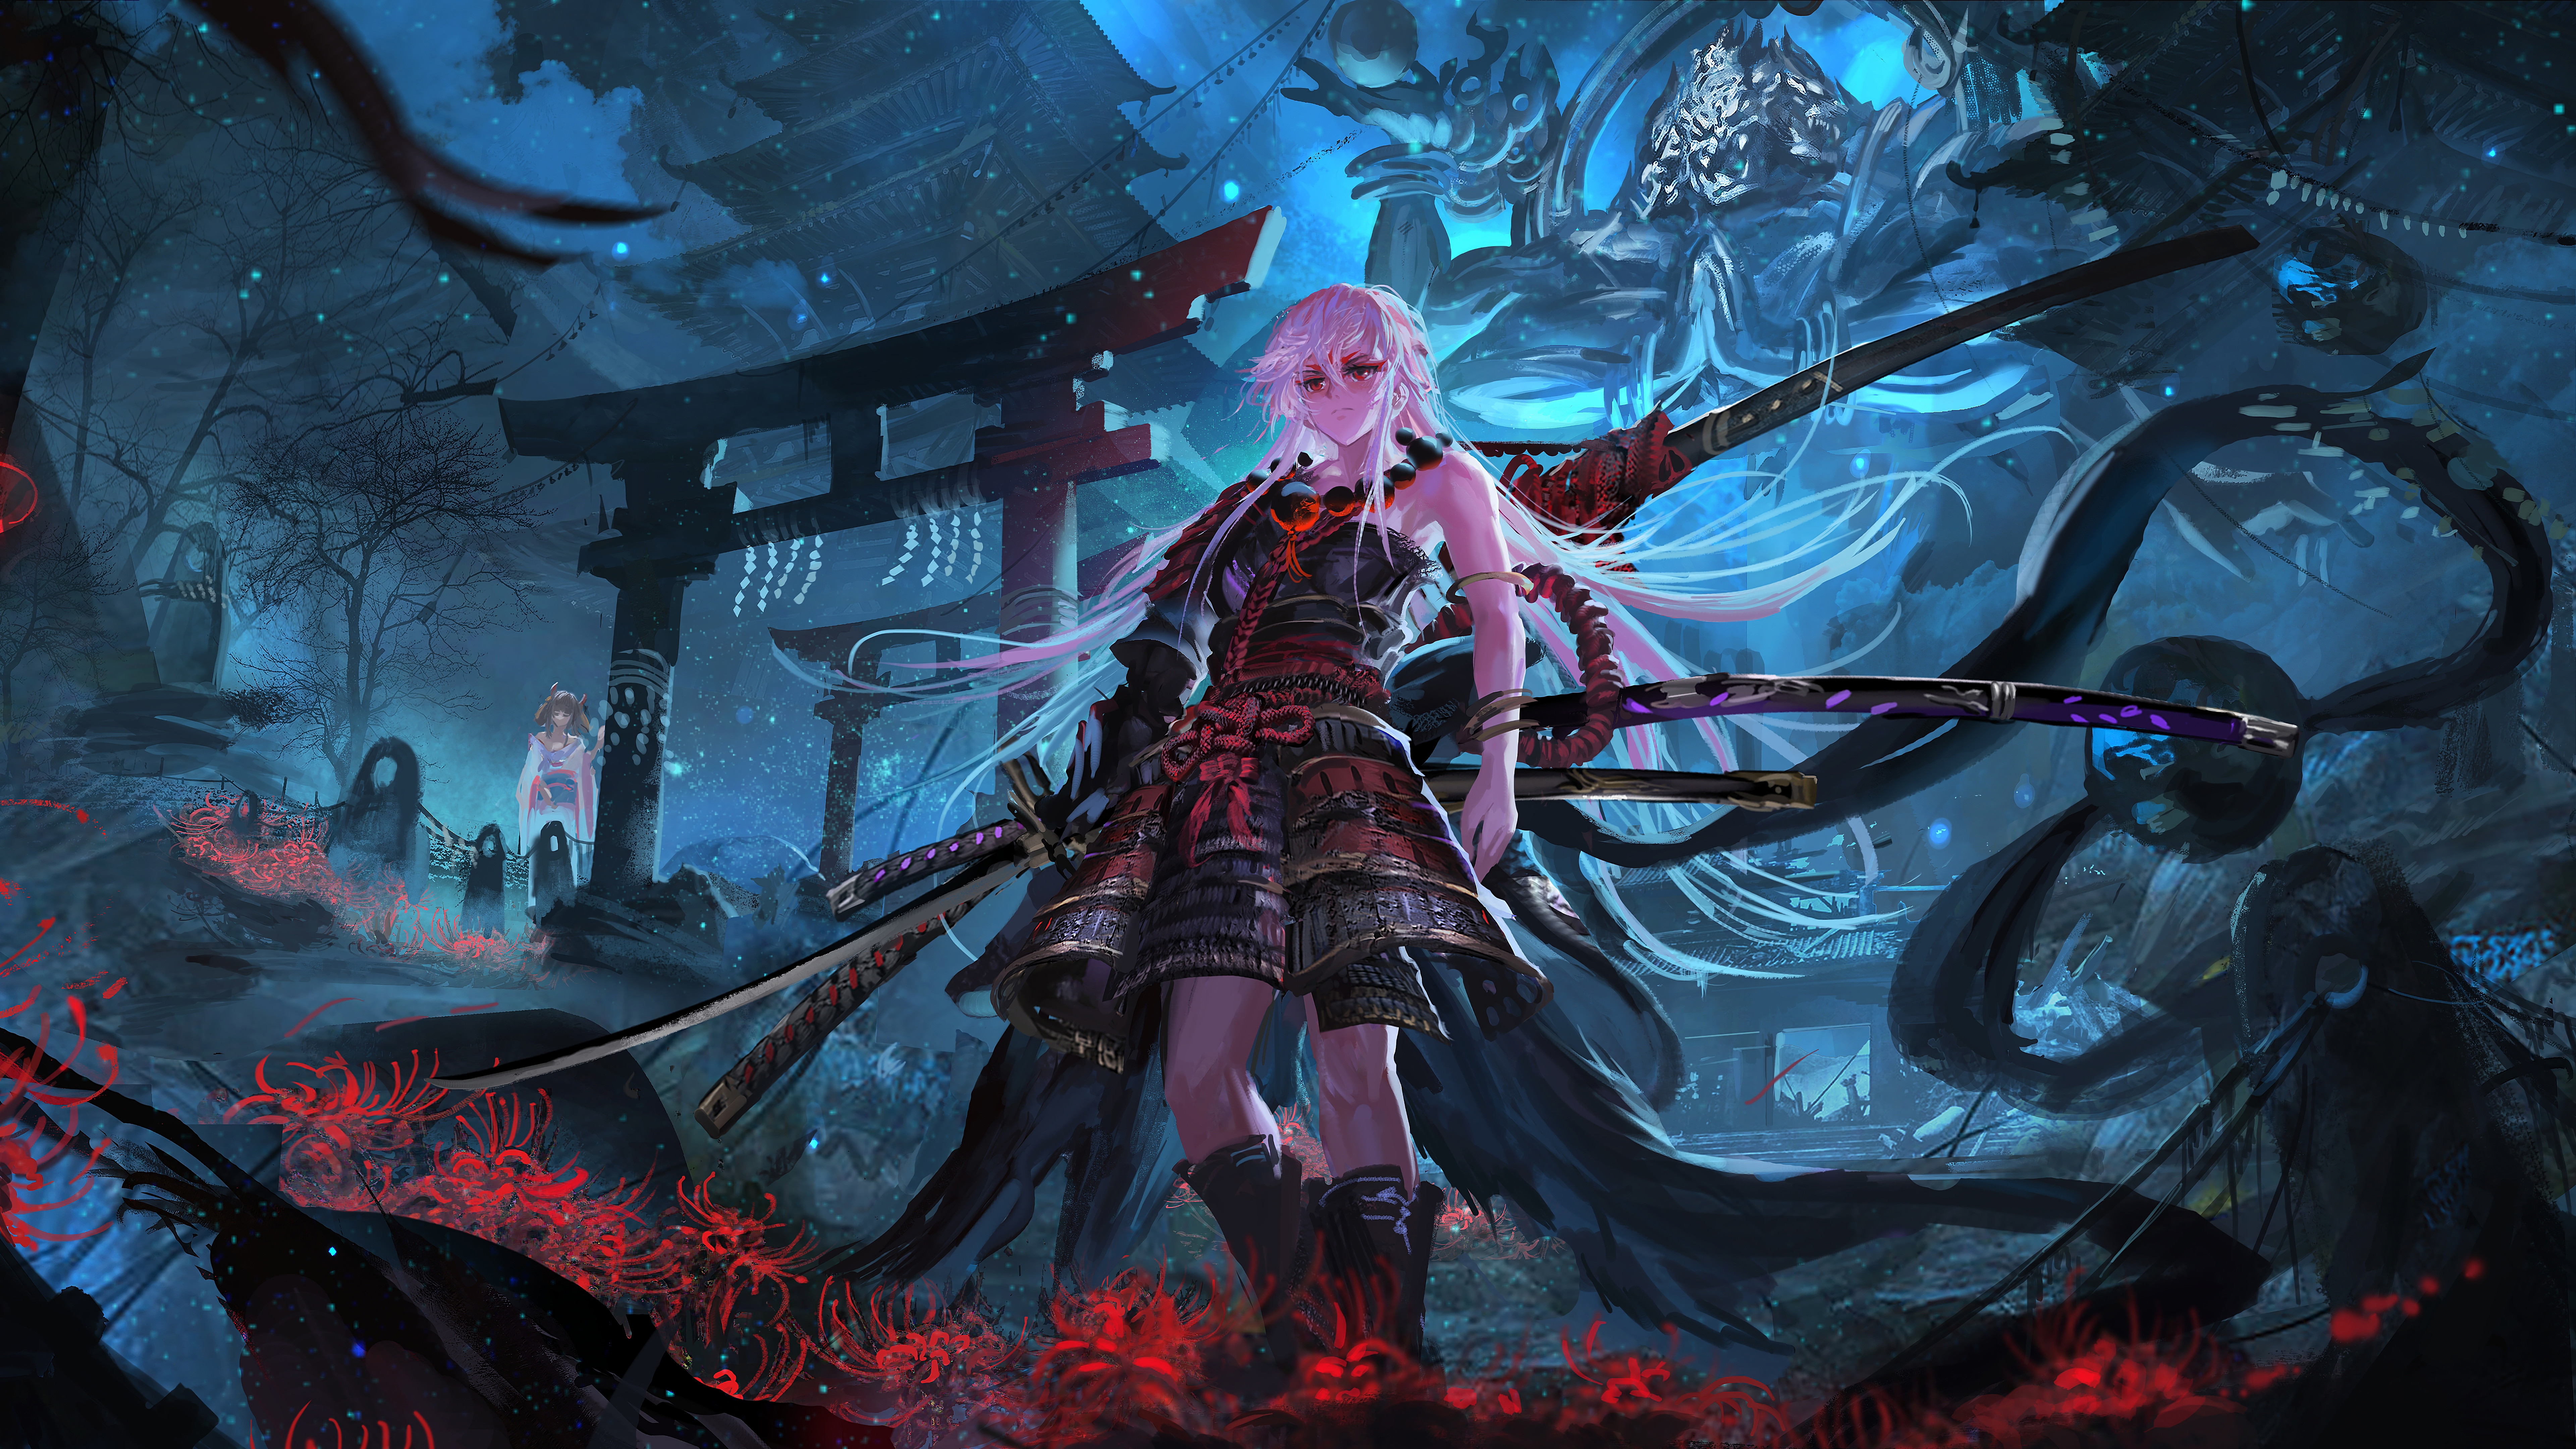 Cô gái Samurai với thanh kiếm Katana đầy uy lực trông thật khiến người ta không thể rời mắt. Hãy chiêm ngưỡng hình ảnh này và cảm nhận sự mạnh mẽ và quyến rũ đến từ cô nàng Samurai này.